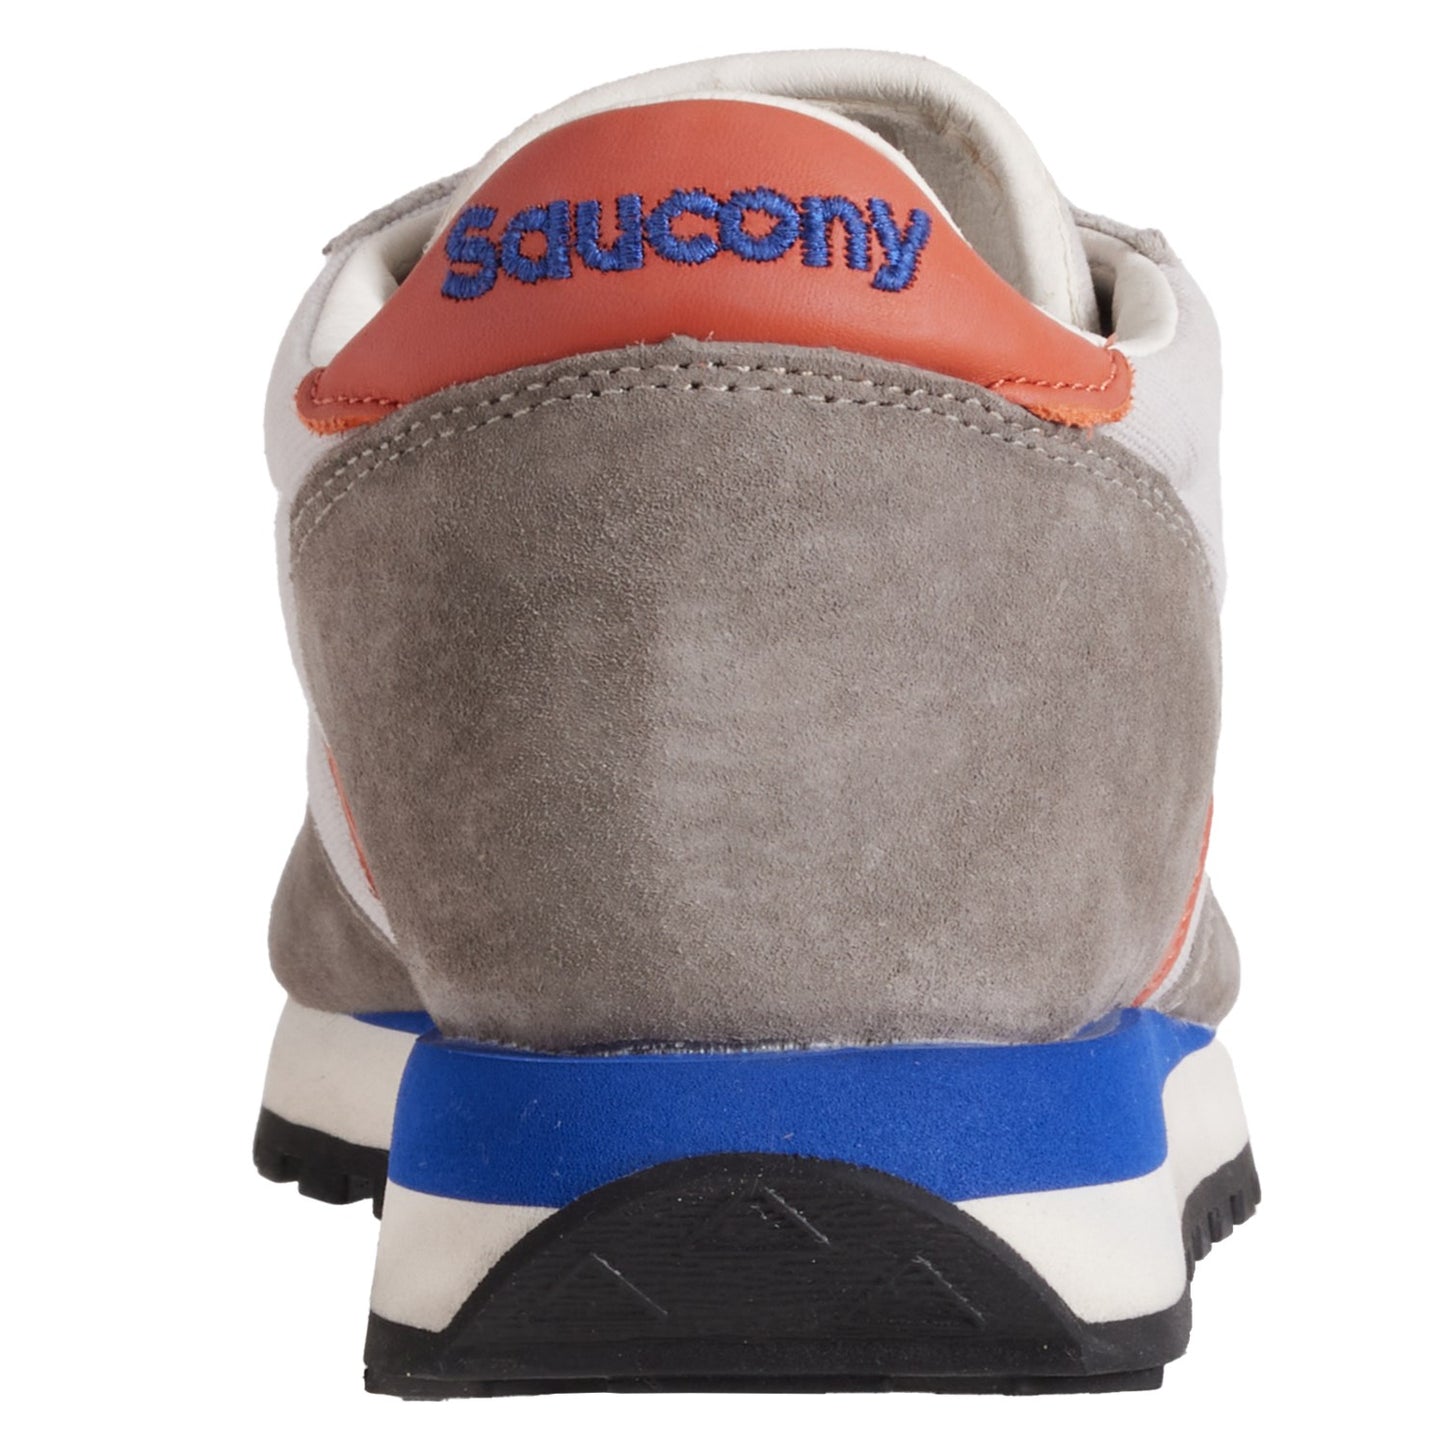 Saucony Originals Jazz 81 Grey Rust S70755-5 New Men's Retro Sneakers rear heel